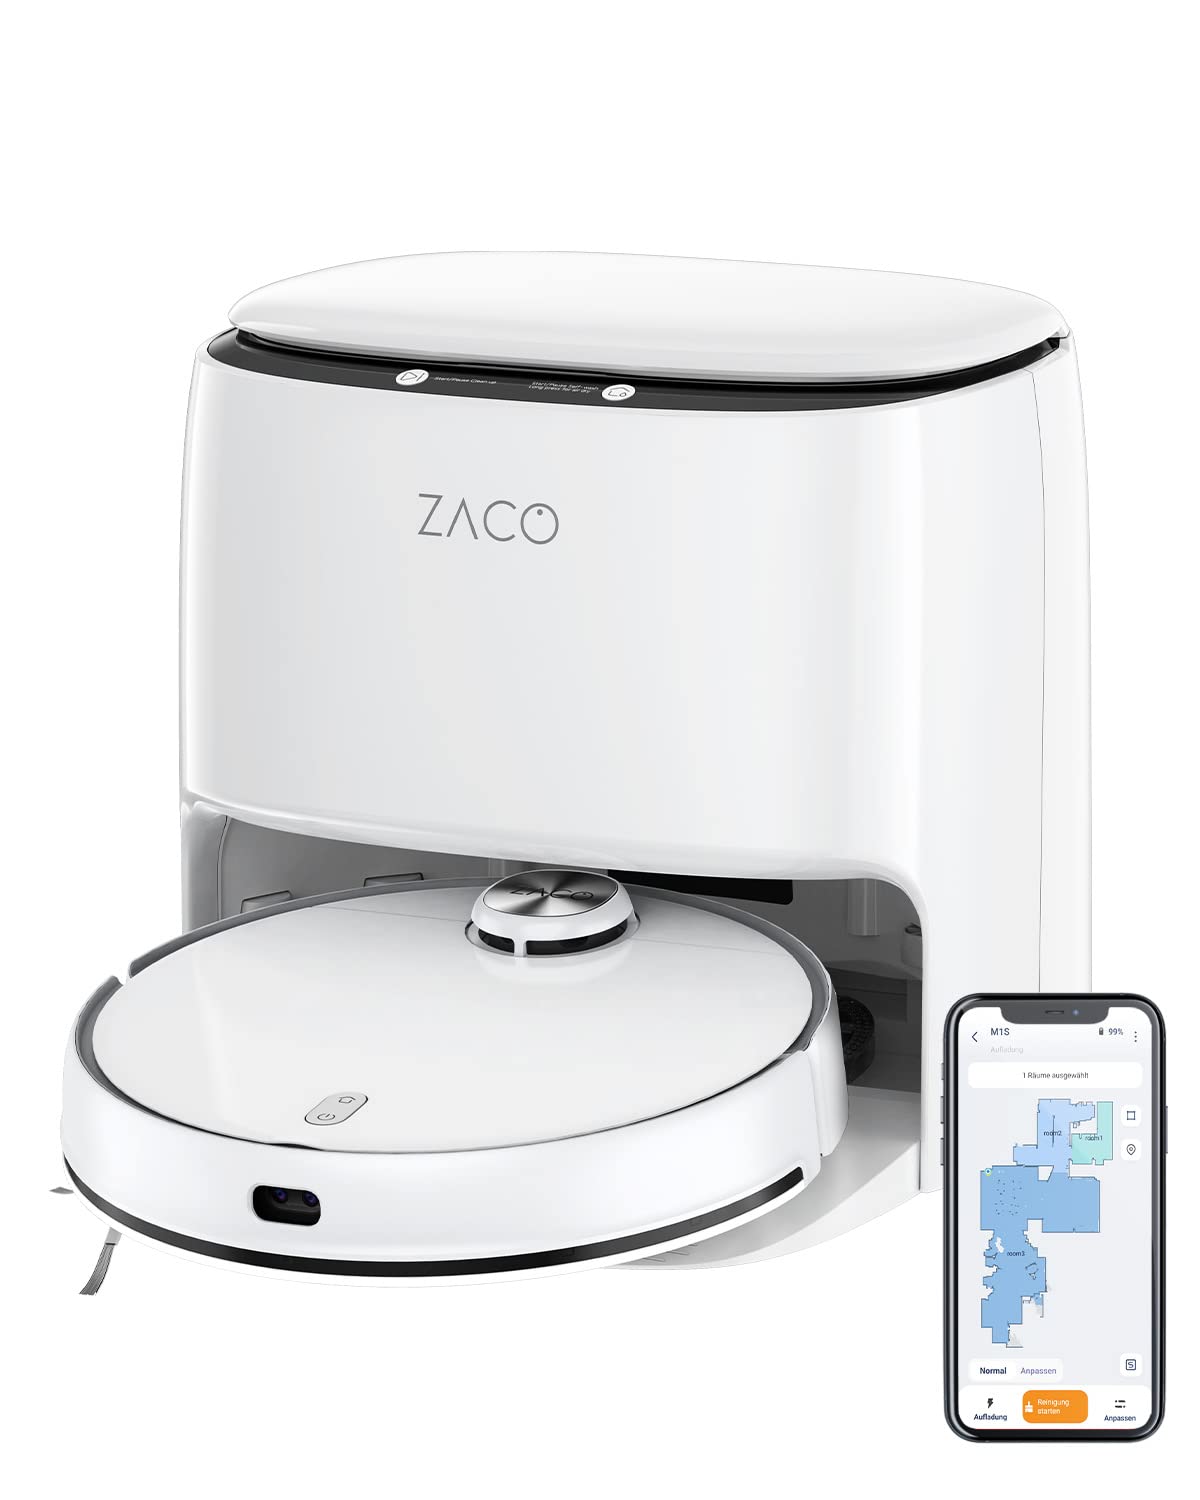 ZACO M1S Saug Wischroboter mit Waschstation, Selbstreinigung, Lasernavigation & Hinderniserkennung, 4L Frischwassertank, App, Mapping, bis 180Min, Wisch Saugroboter für Parkett & Tierhaare